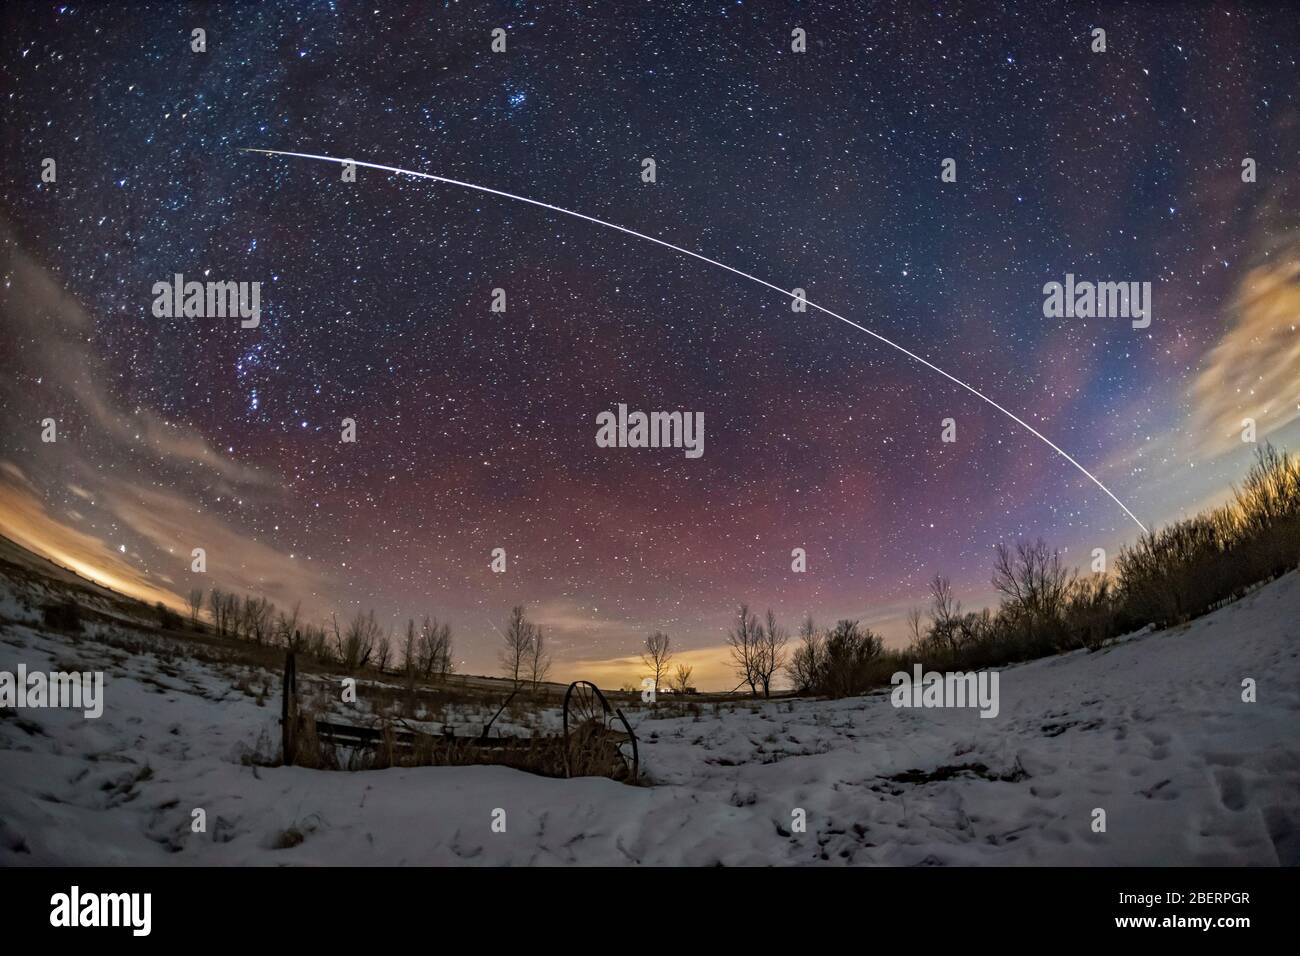 La Station spatiale internationale, l'aérolut et la lumière zodiacale sur la campagne de l'Alberta, au Canada. Banque D'Images